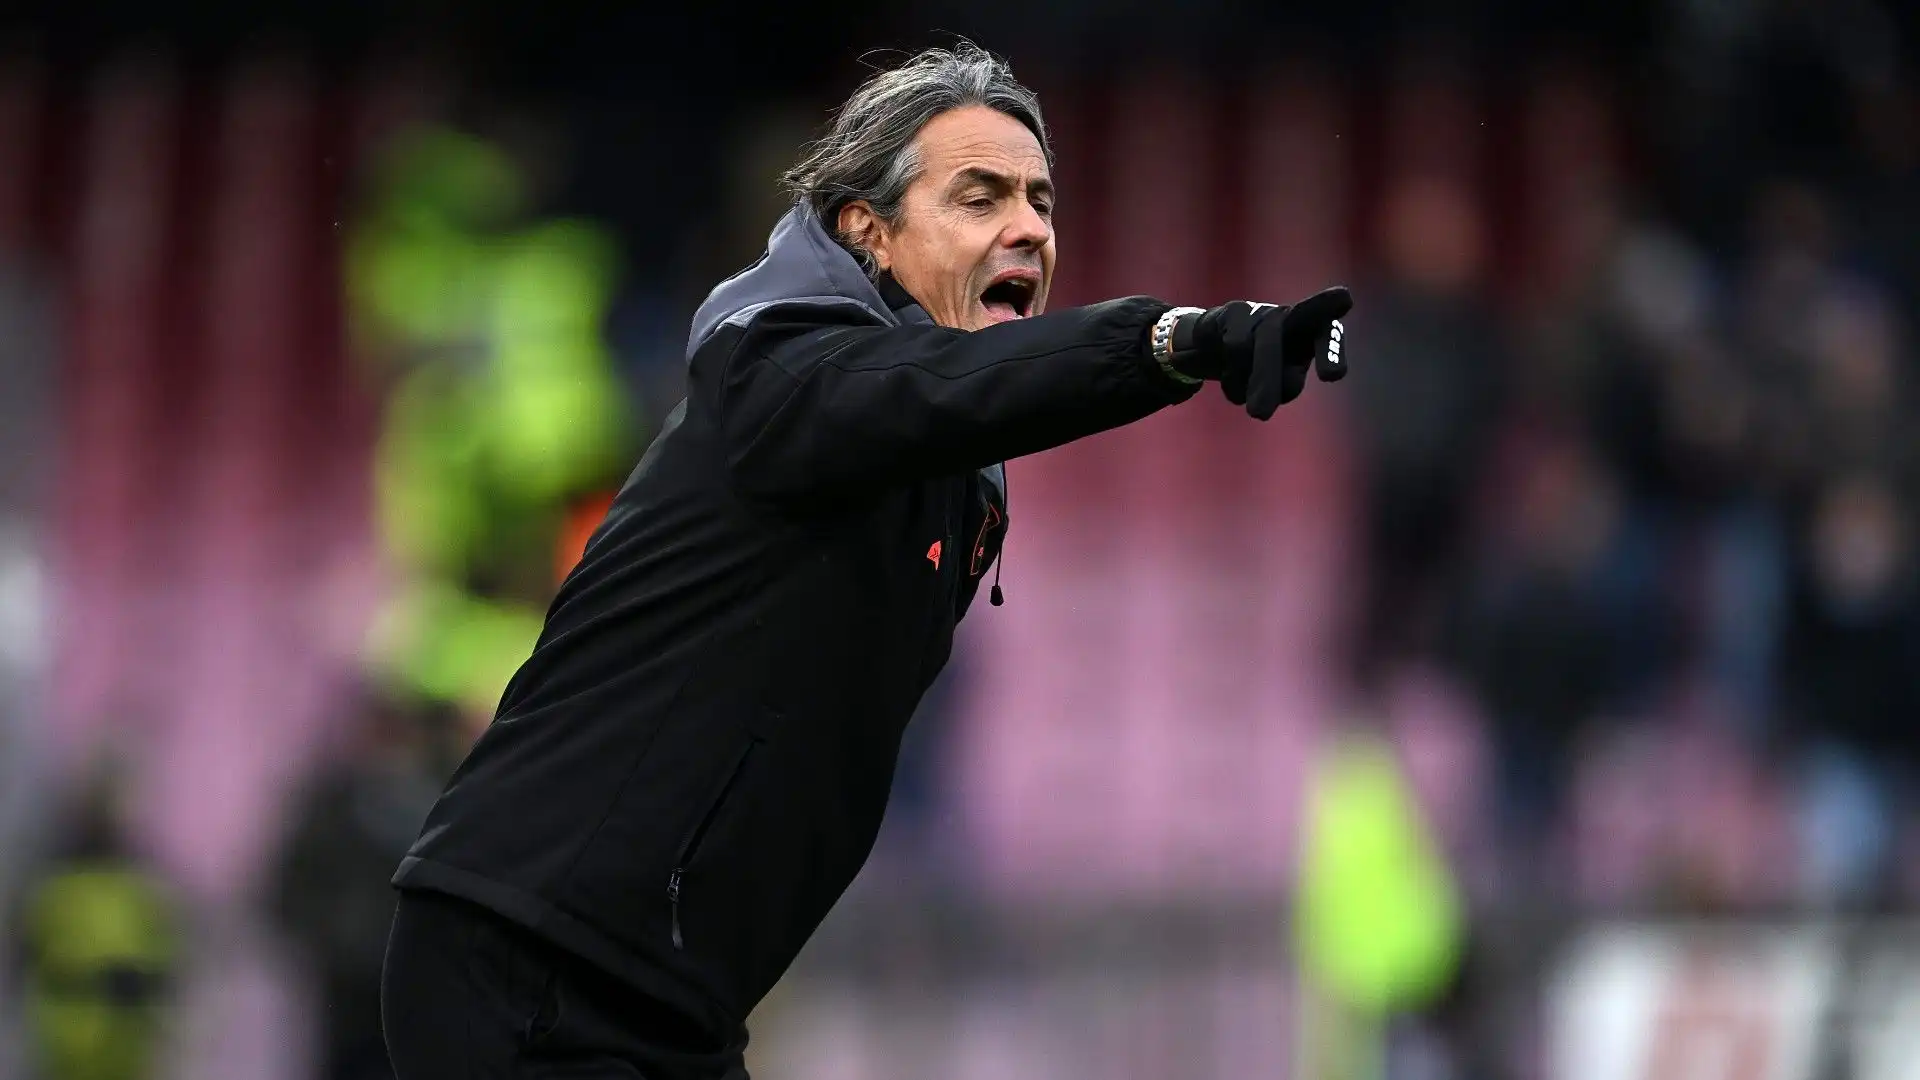 La squadra di Inzaghi ha trionfato 2-1 dopo essere andata in svantaggio